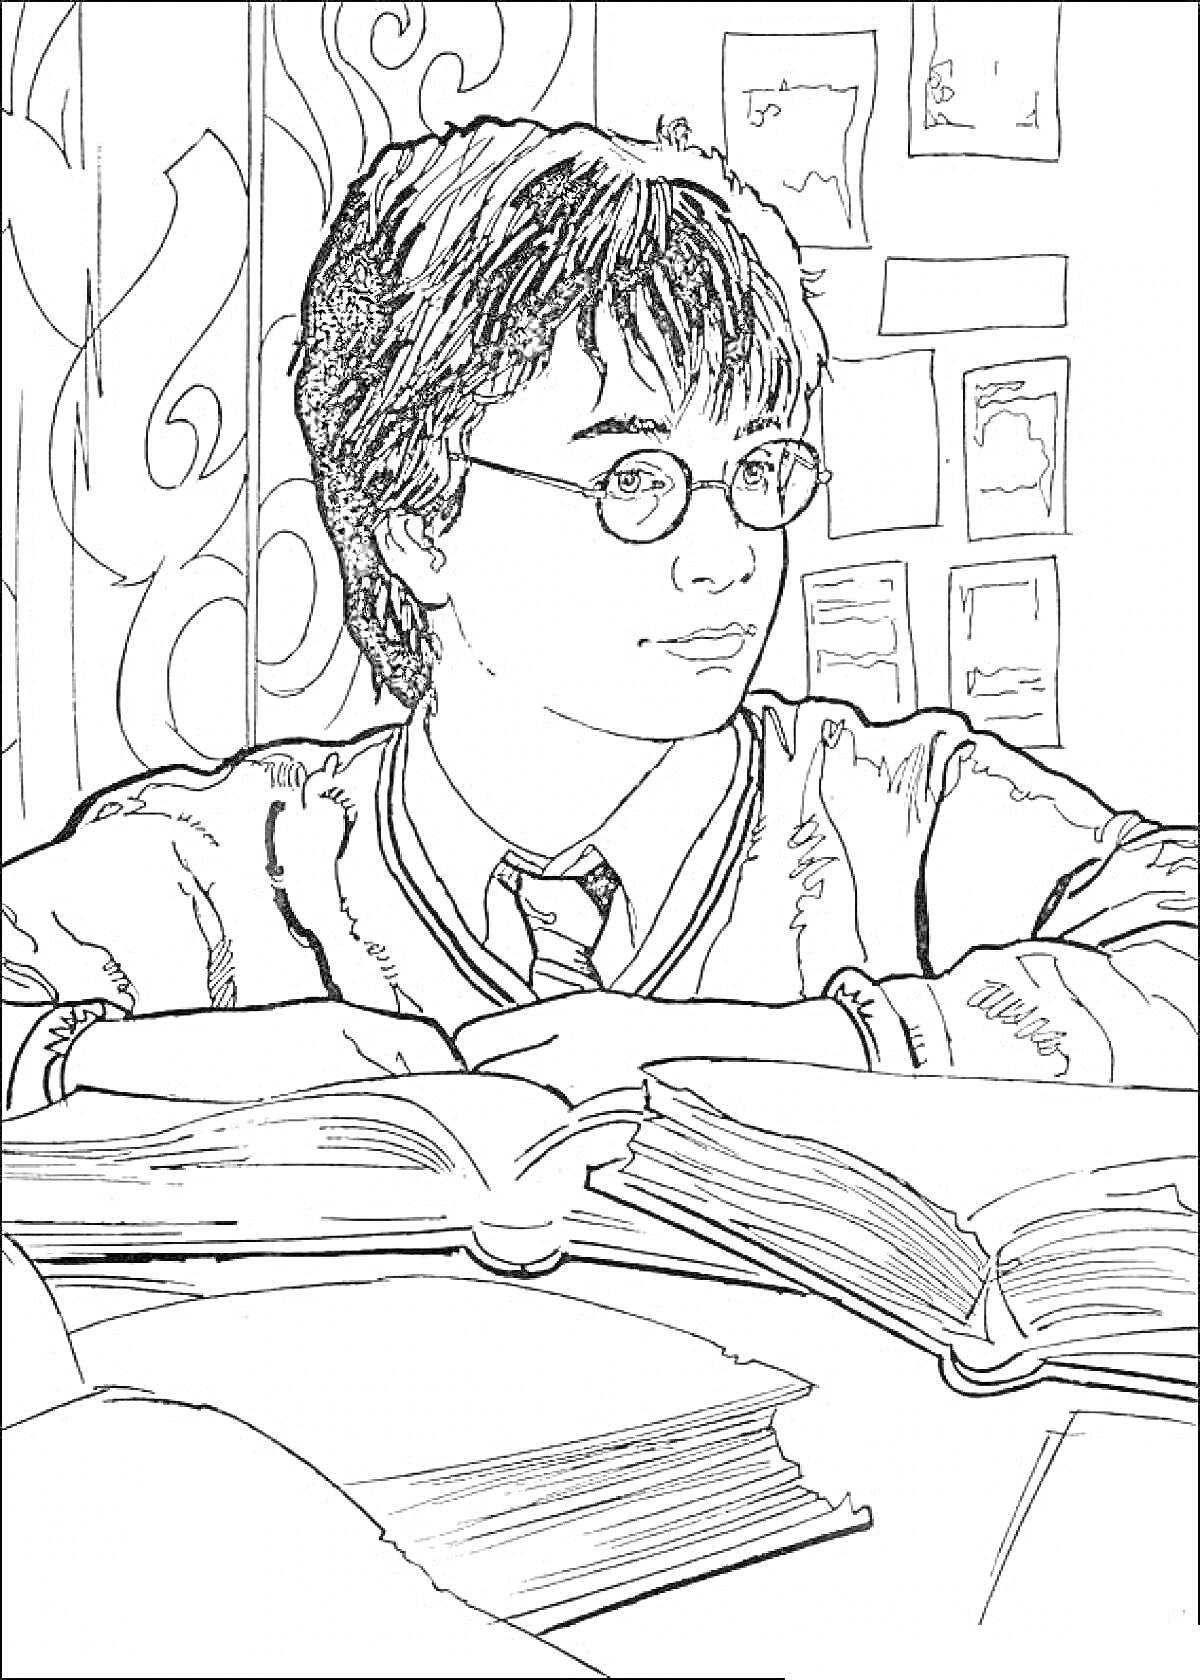 Гарри Поттер за столом с книгами в библиотеке